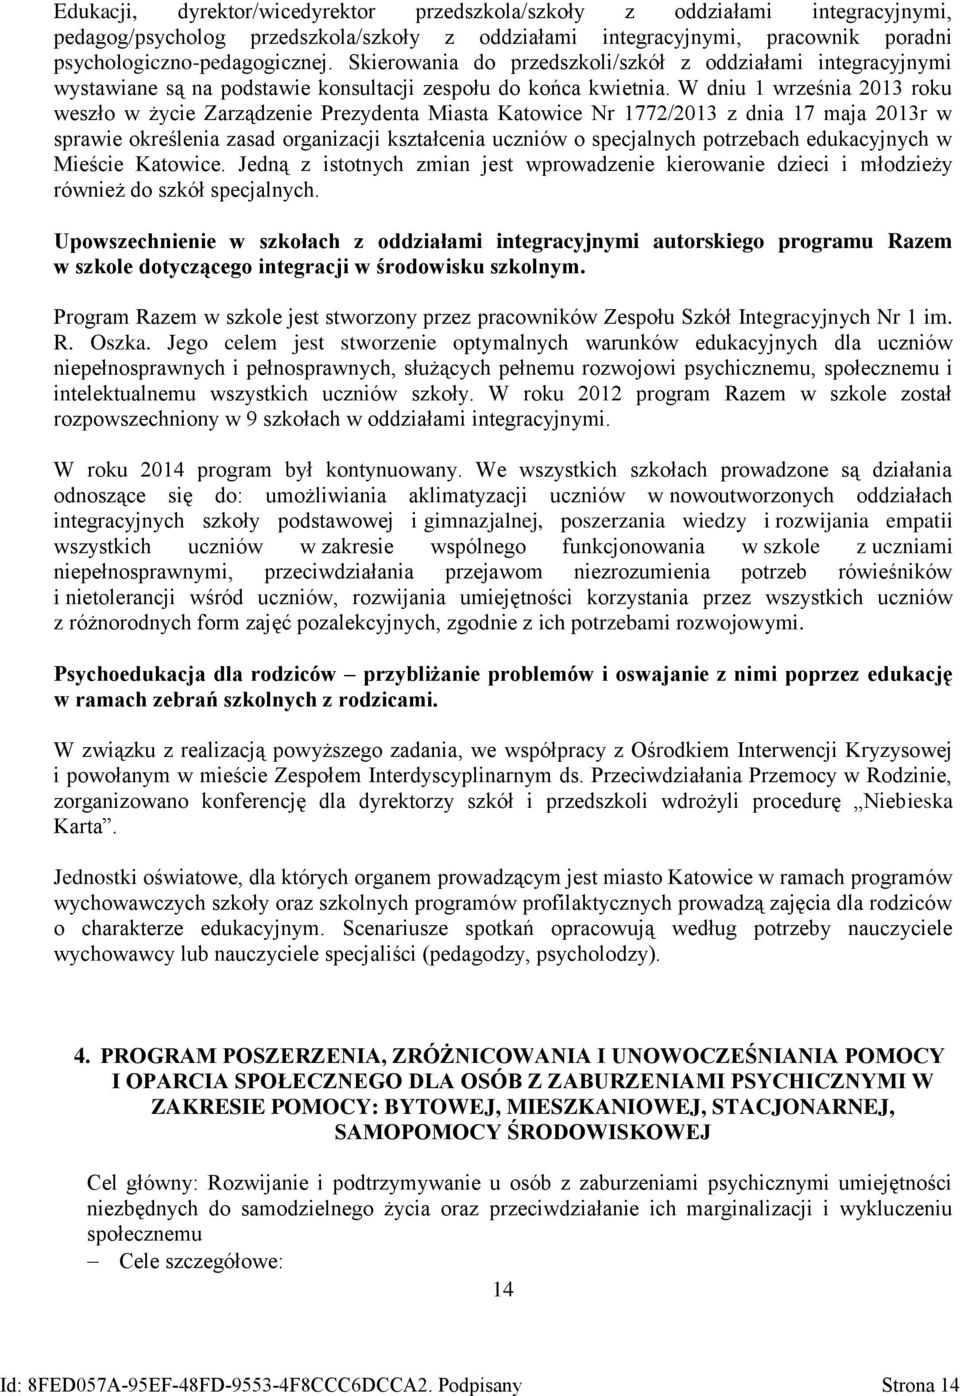 W dniu 1 września 2013 roku weszło w życie Zarządzenie Prezydenta Miasta Katowice Nr 1772/2013 z dnia 17 maja 2013r w sprawie określenia zasad organizacji kształcenia uczniów o specjalnych potrzebach